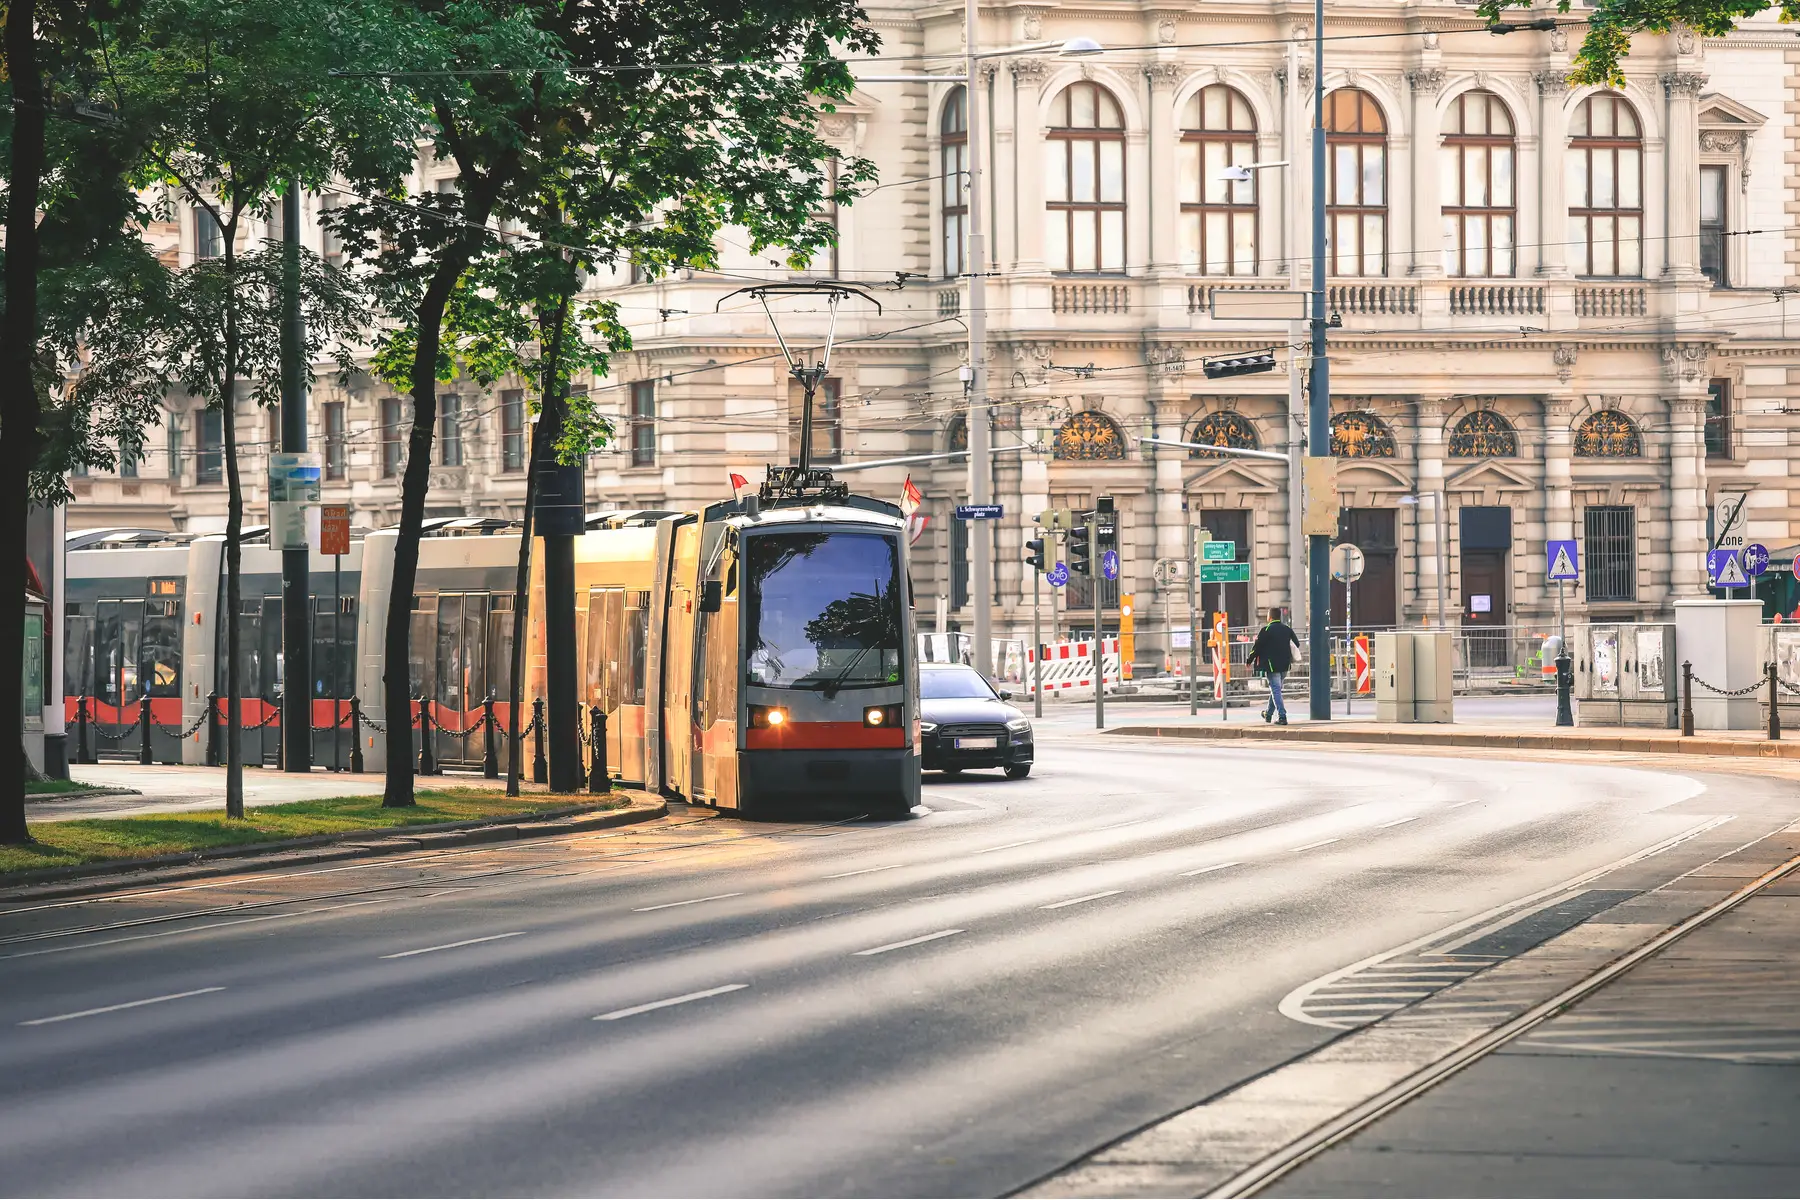 Tram on a street in Vienna